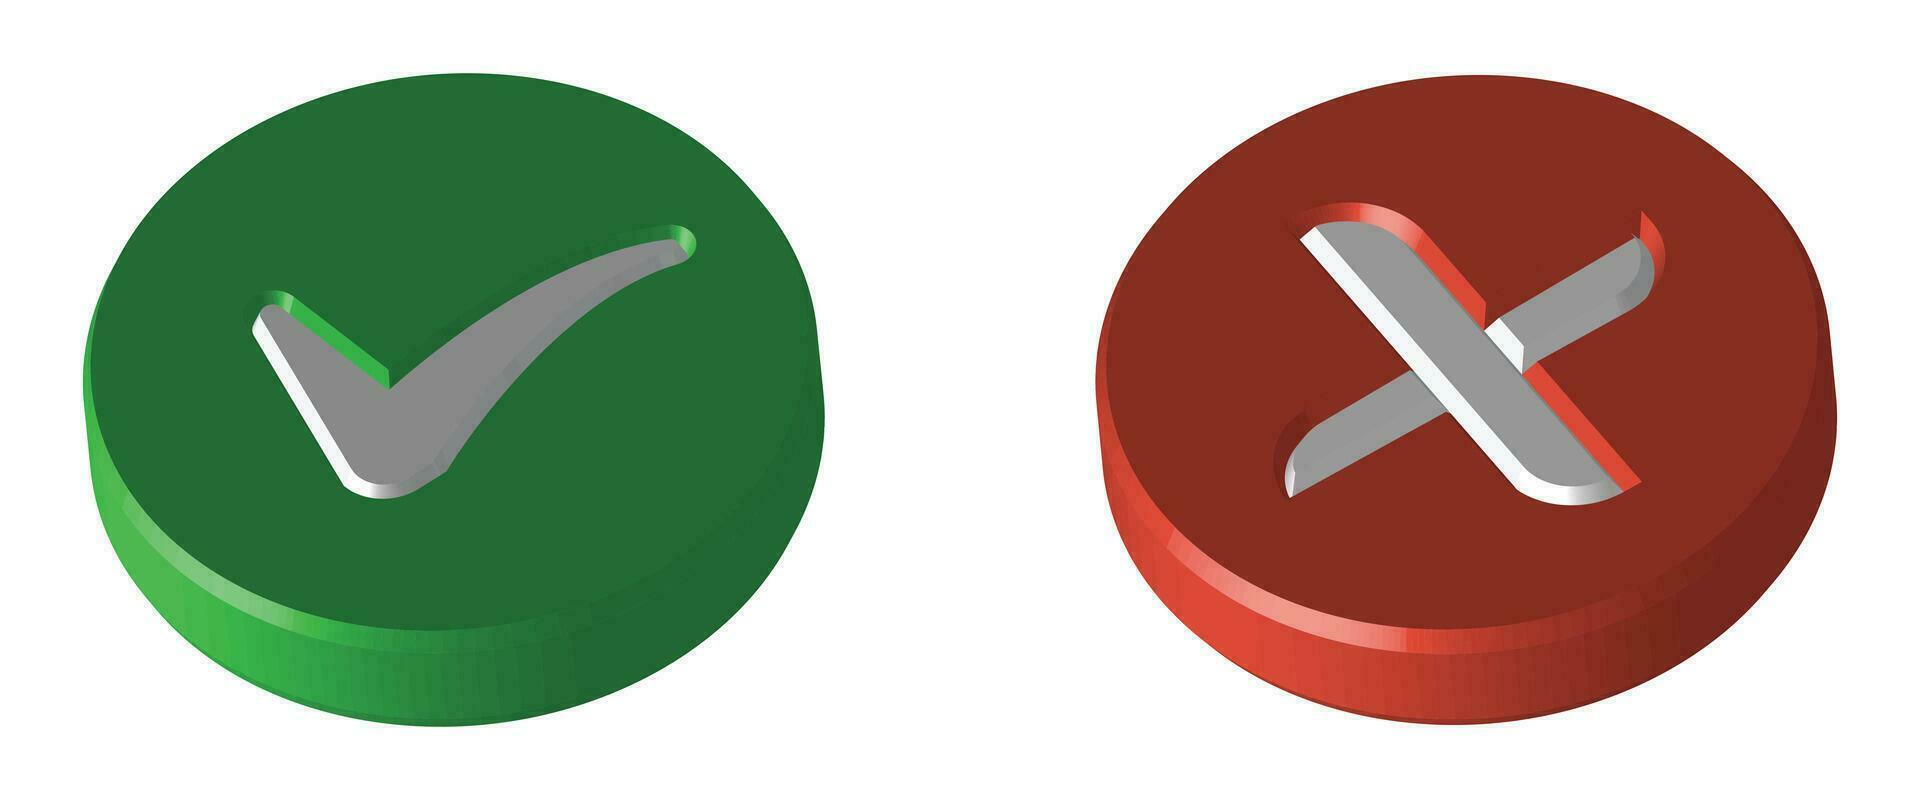 réaliste 3d vert droite vérifier marque icône, faux coche icône, brillant et brillant coche icône et traverser marque icône, vert et rouge réaliste coche avec correct faux ou X marque vecteur illustration